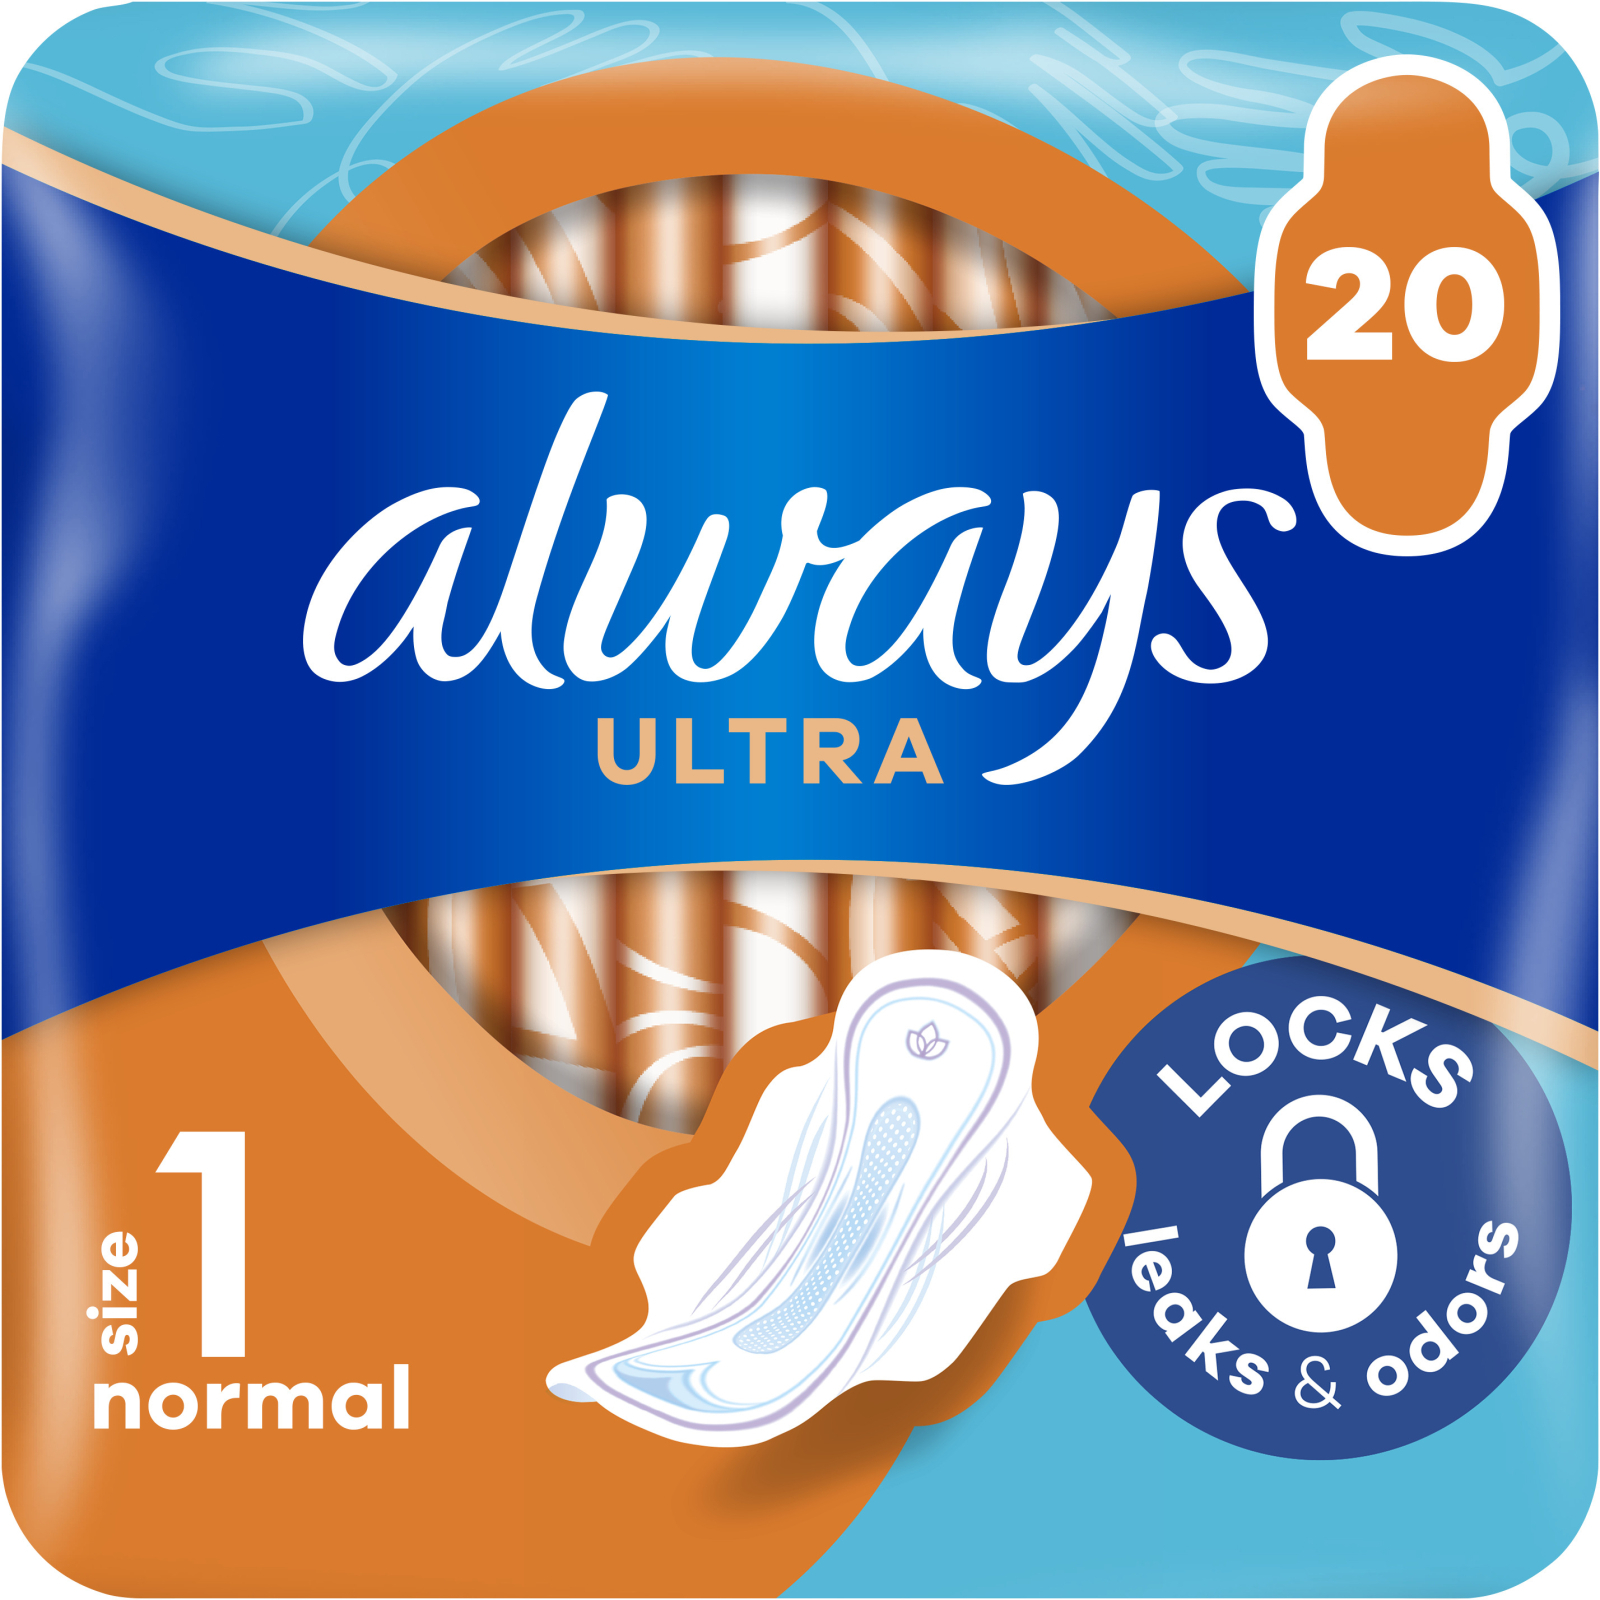 Гигиенические прокладки Always Ultra Normal (Размер 1) 40 шт. (8006540211380)